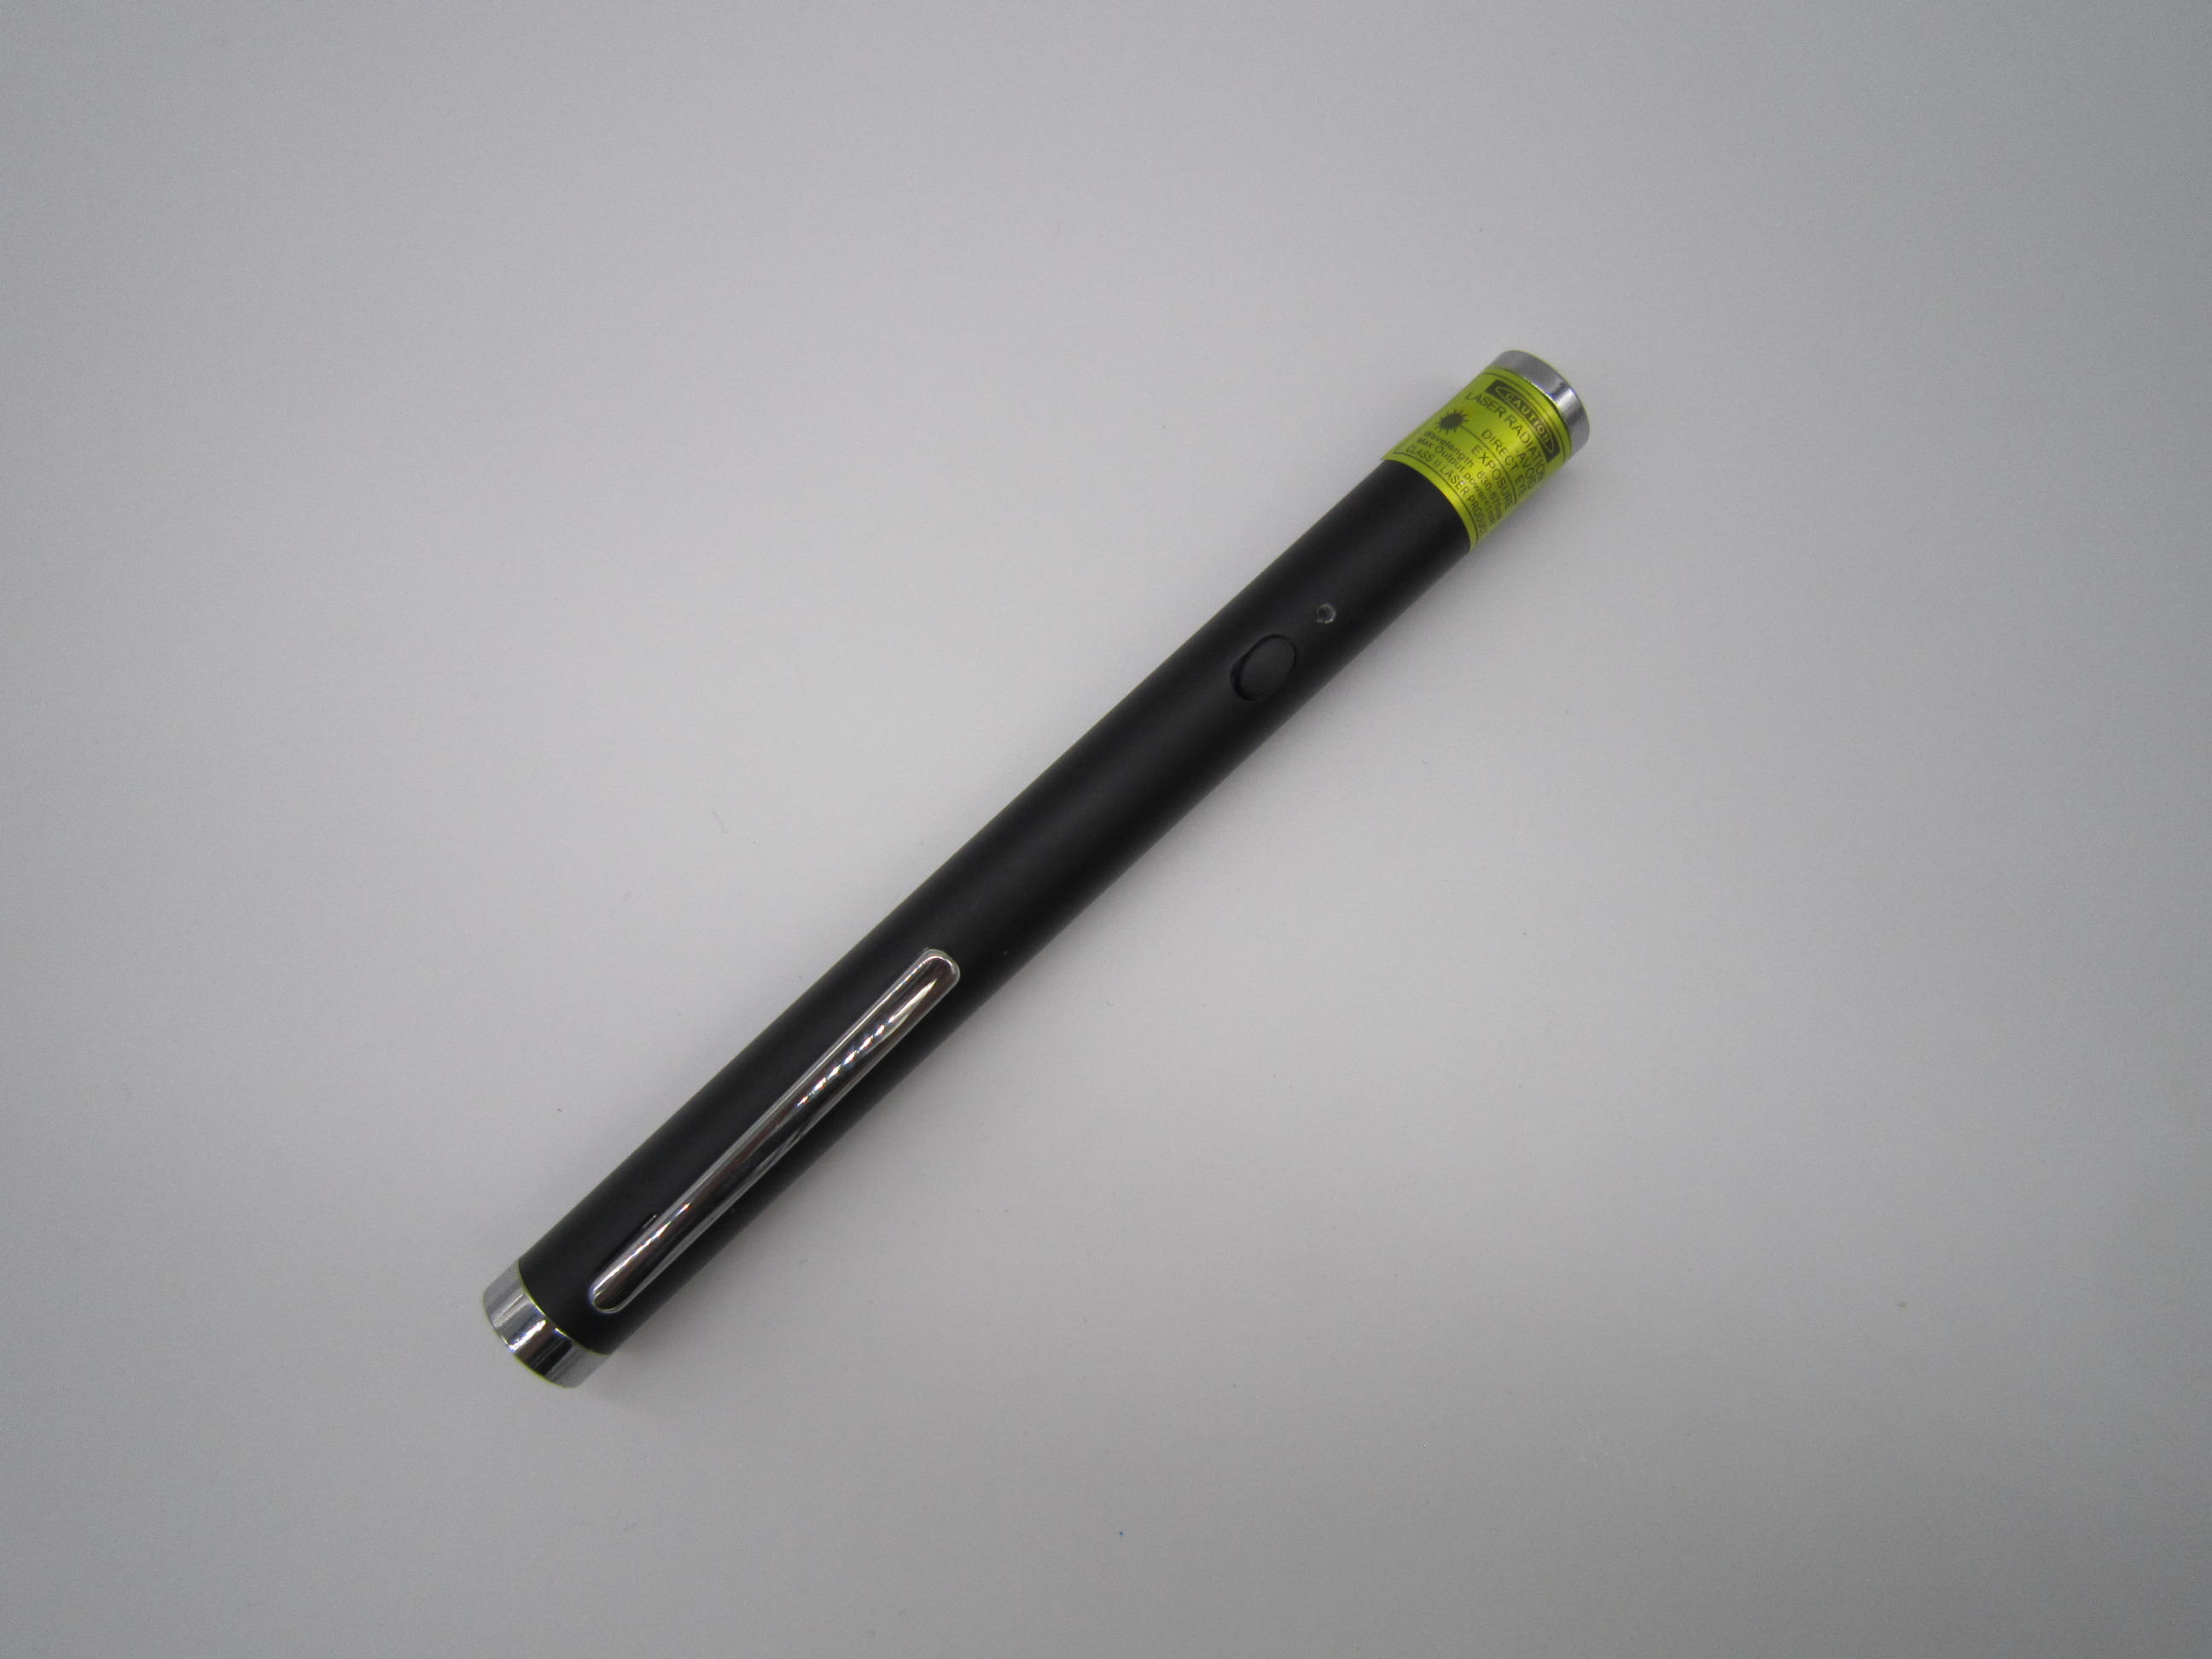 HDW-GLP015 Green laser pointer